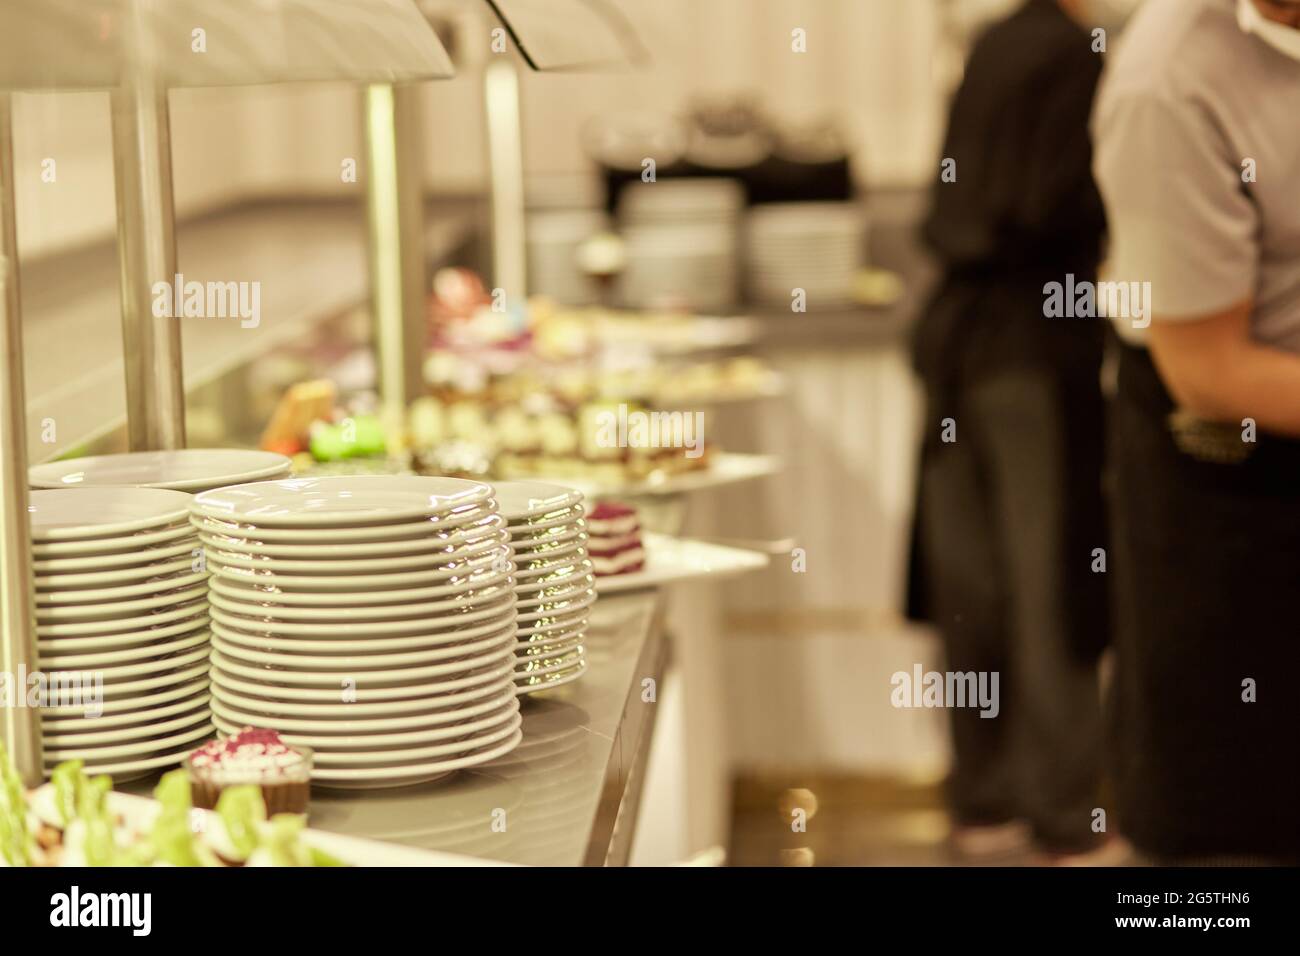 Kemer, Turchia - Maggio, 25: Buffet al ristorante, catering food party: Servizio di persone che raccolgono cibo. Foto Stock